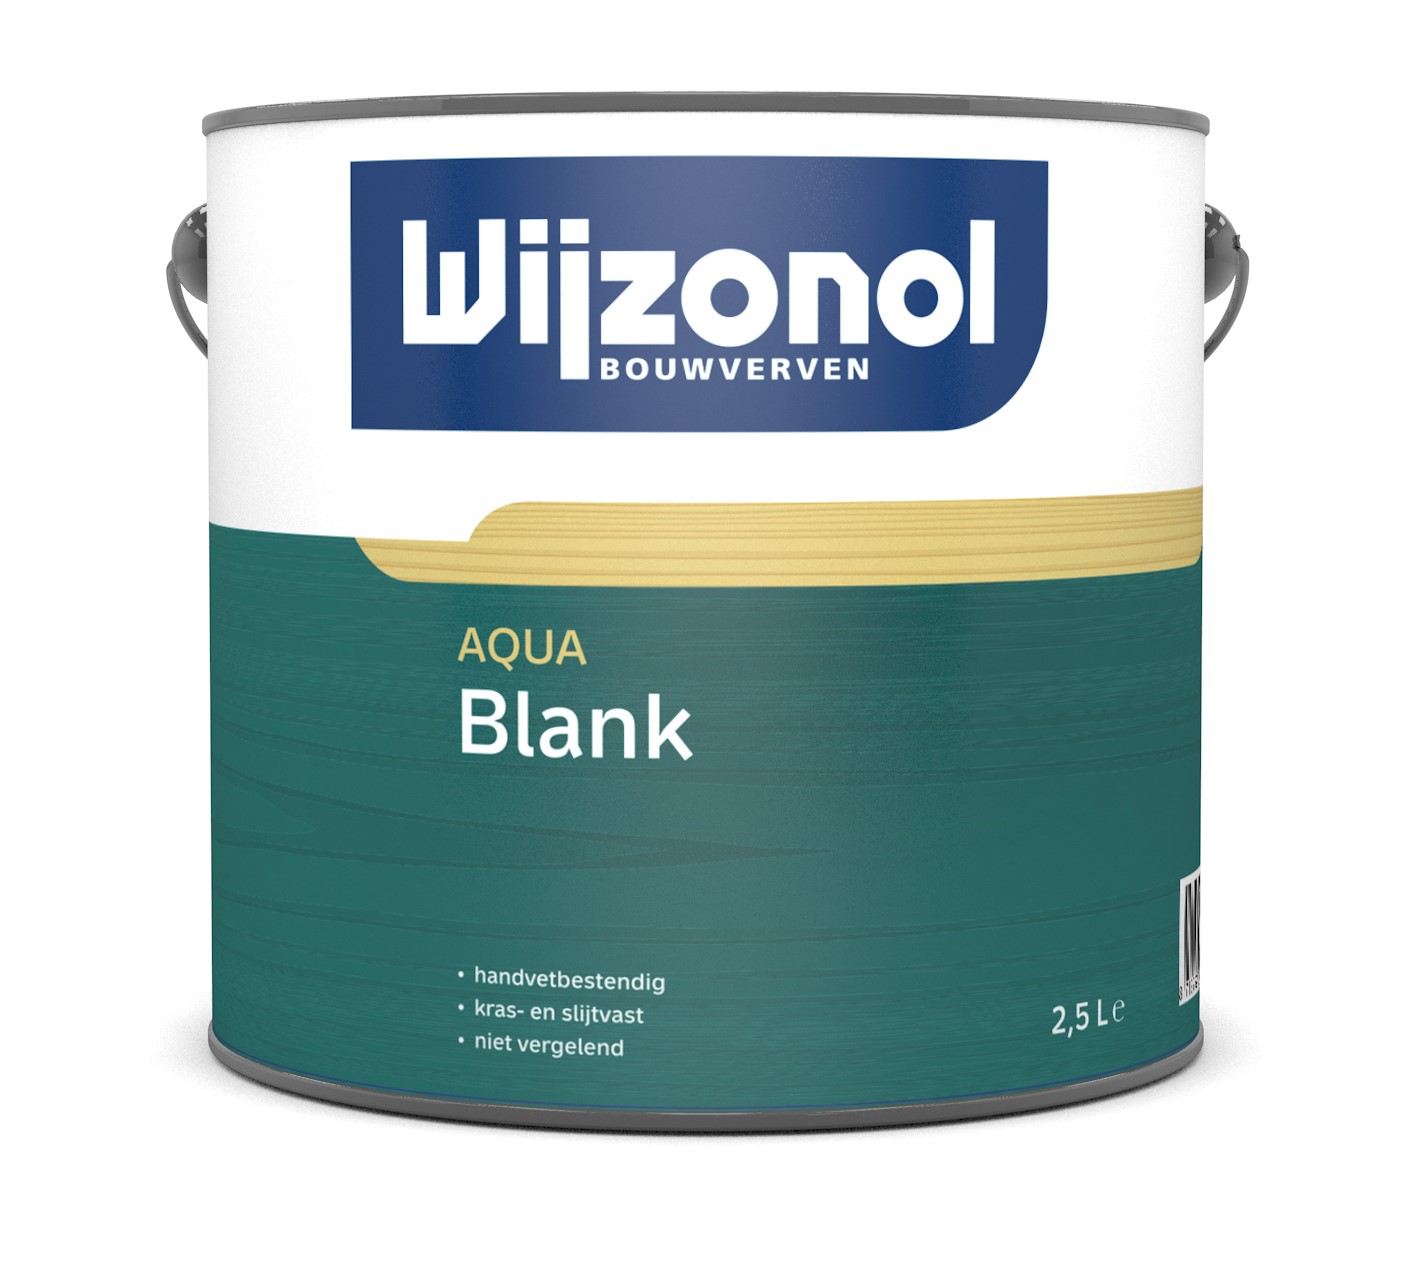 Wijzonol Aqua Blank Zijdeglans